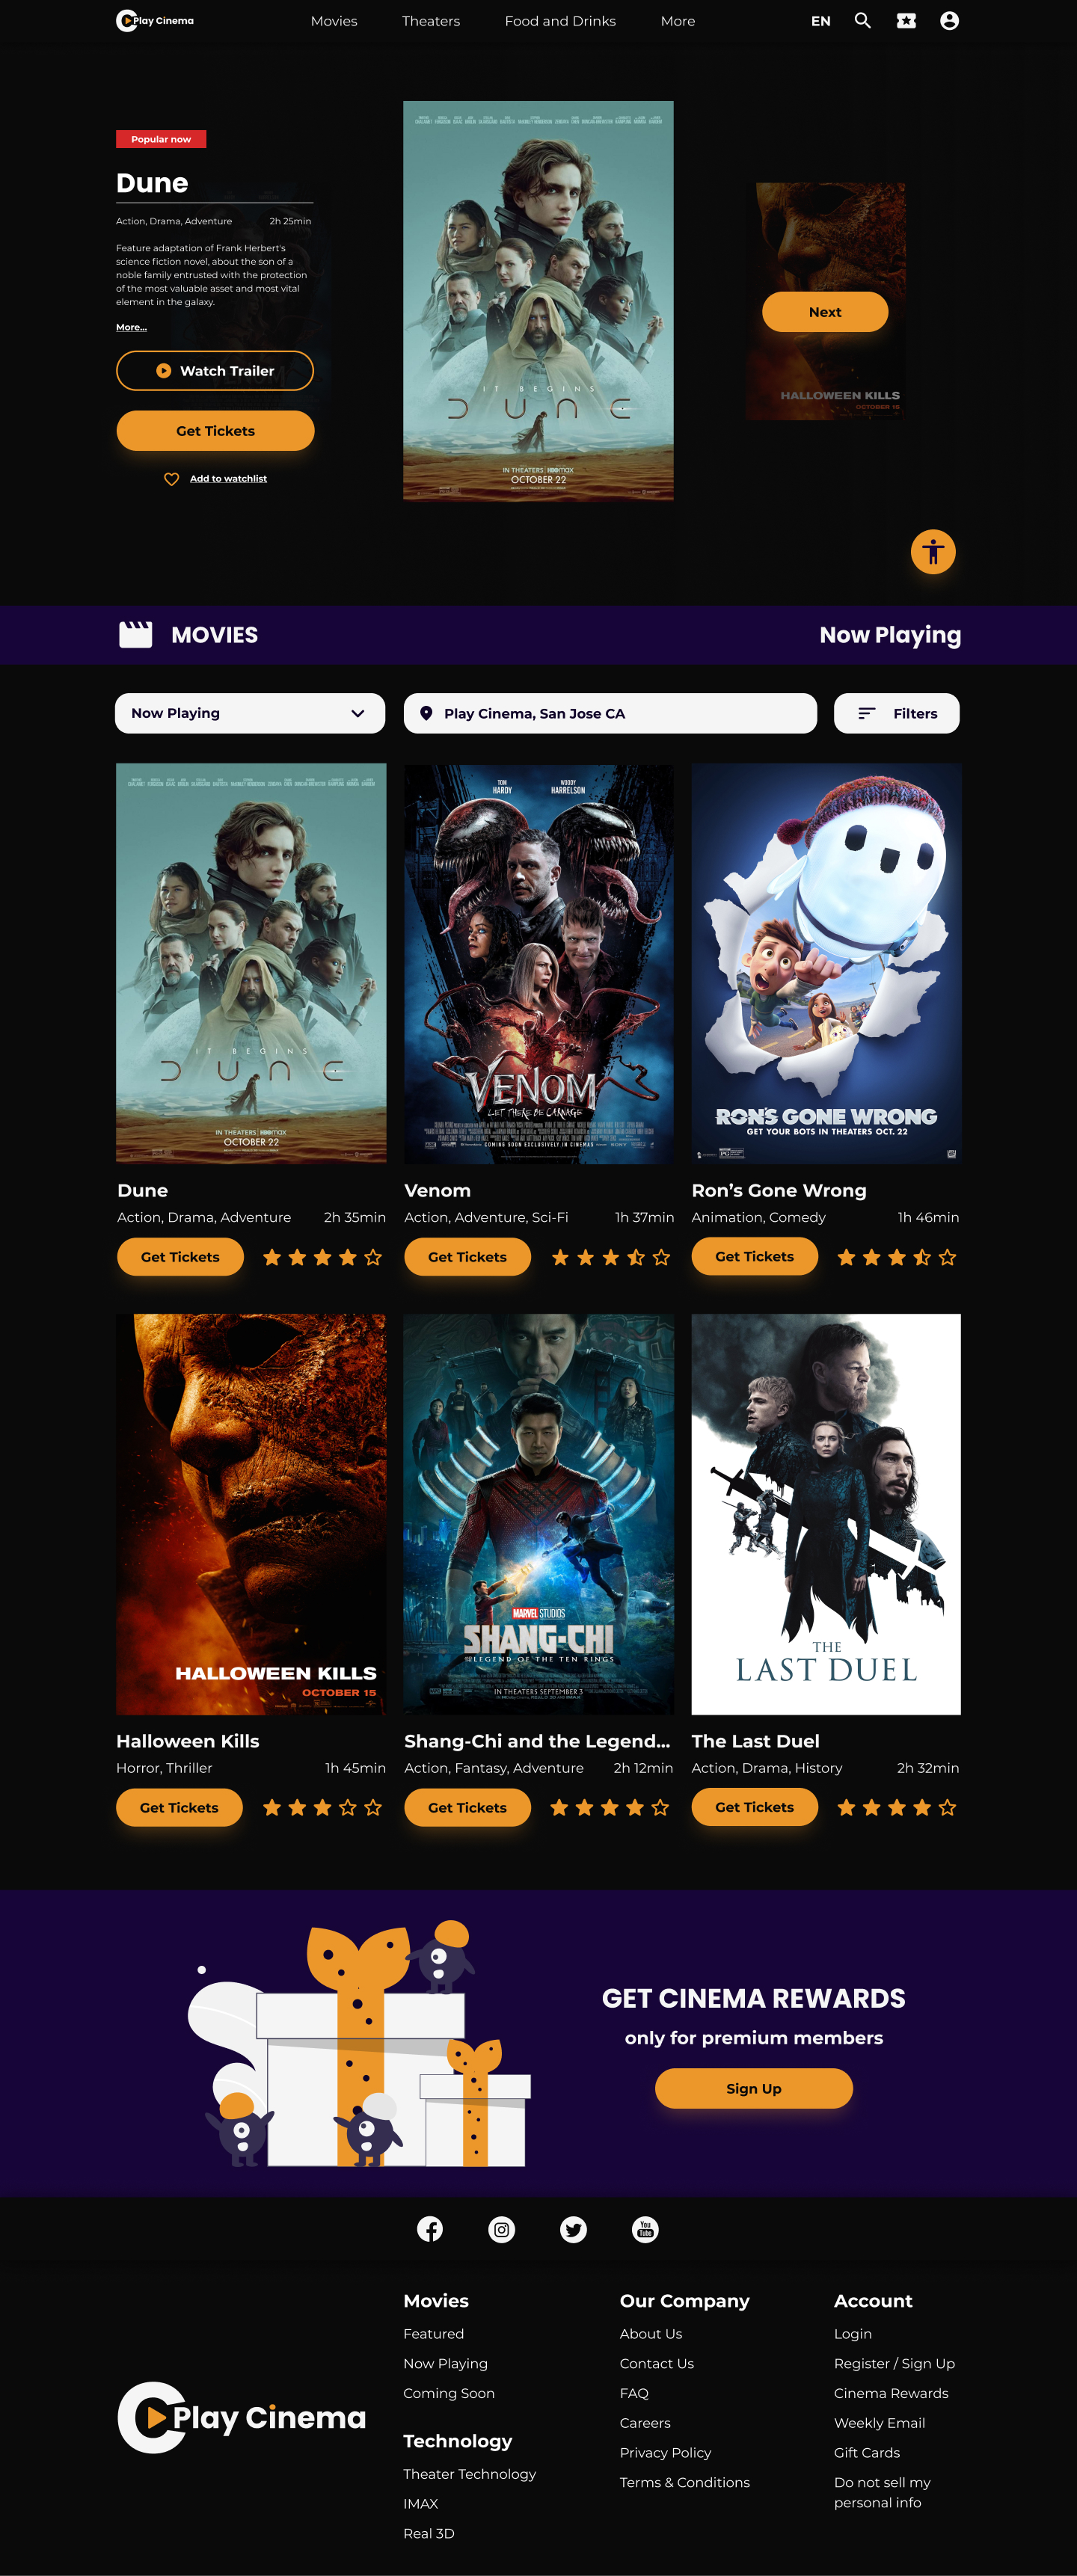 Play Cinema Homepage screen for desktop